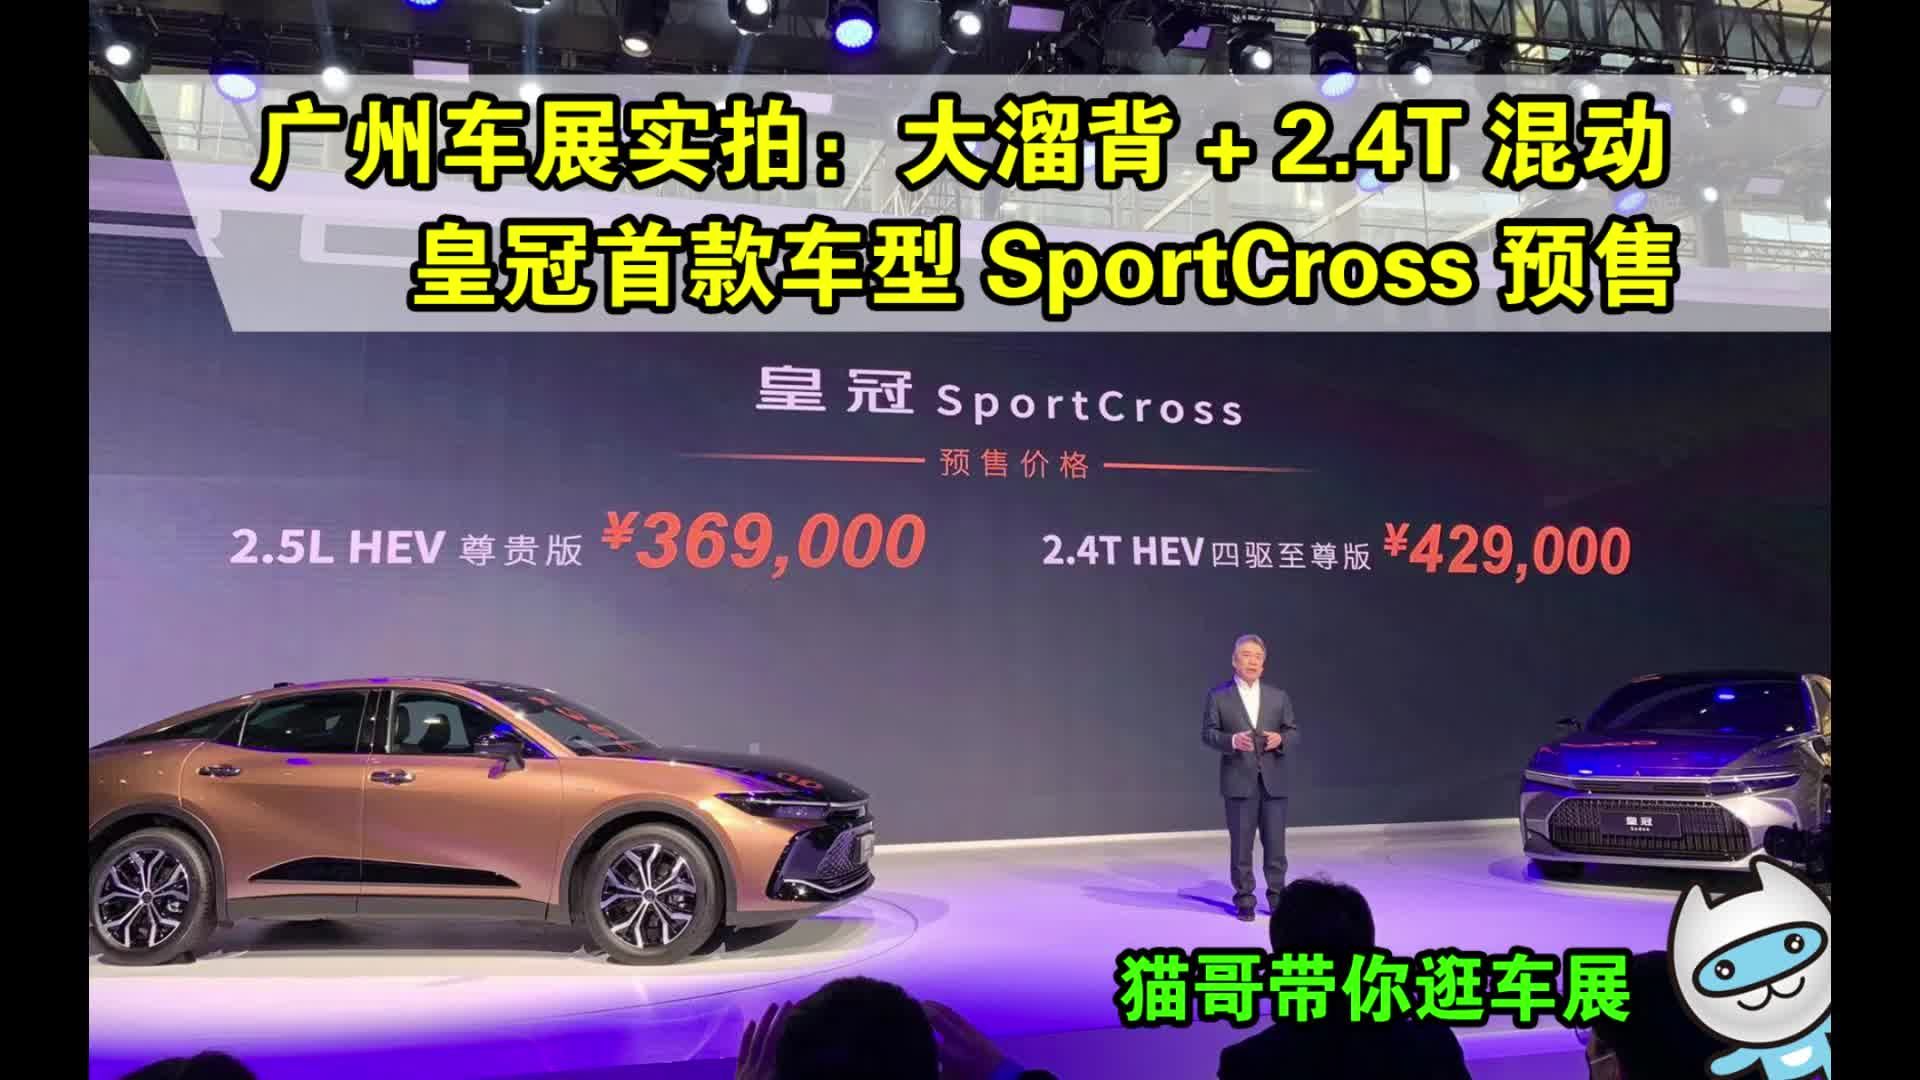 广州车展实拍：大溜背+2.4T混动 皇冠首款车型SportCross预售